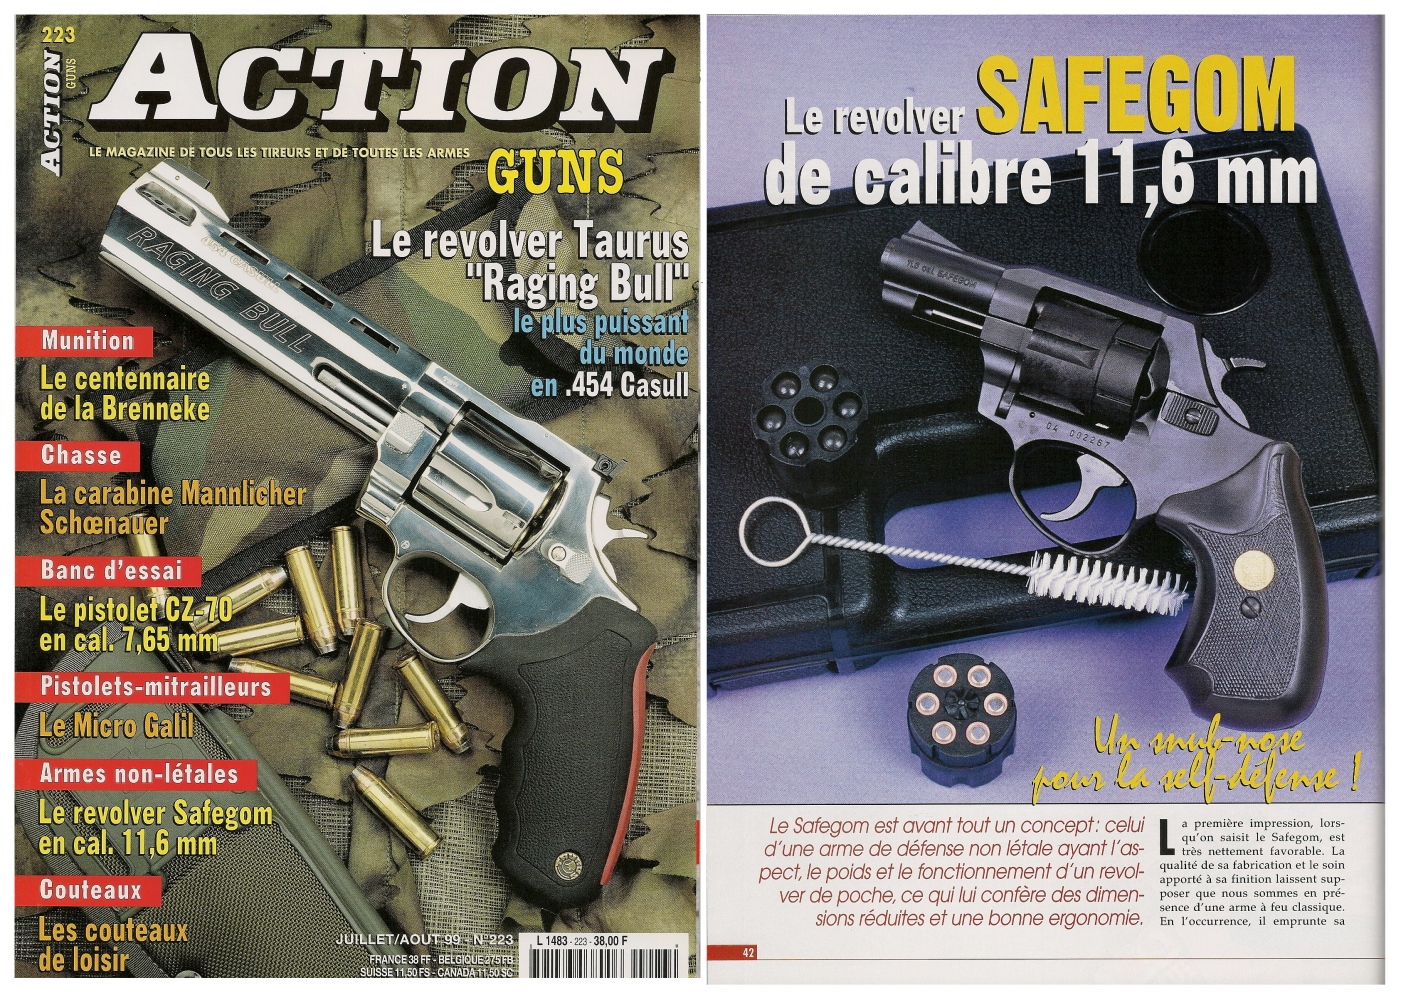 Le banc d’essai du revolver Safegom à balles en caoutchouc a été publié sur 4 pages dans le n°223 (juillet/août 1999) du magazine Action Guns. 